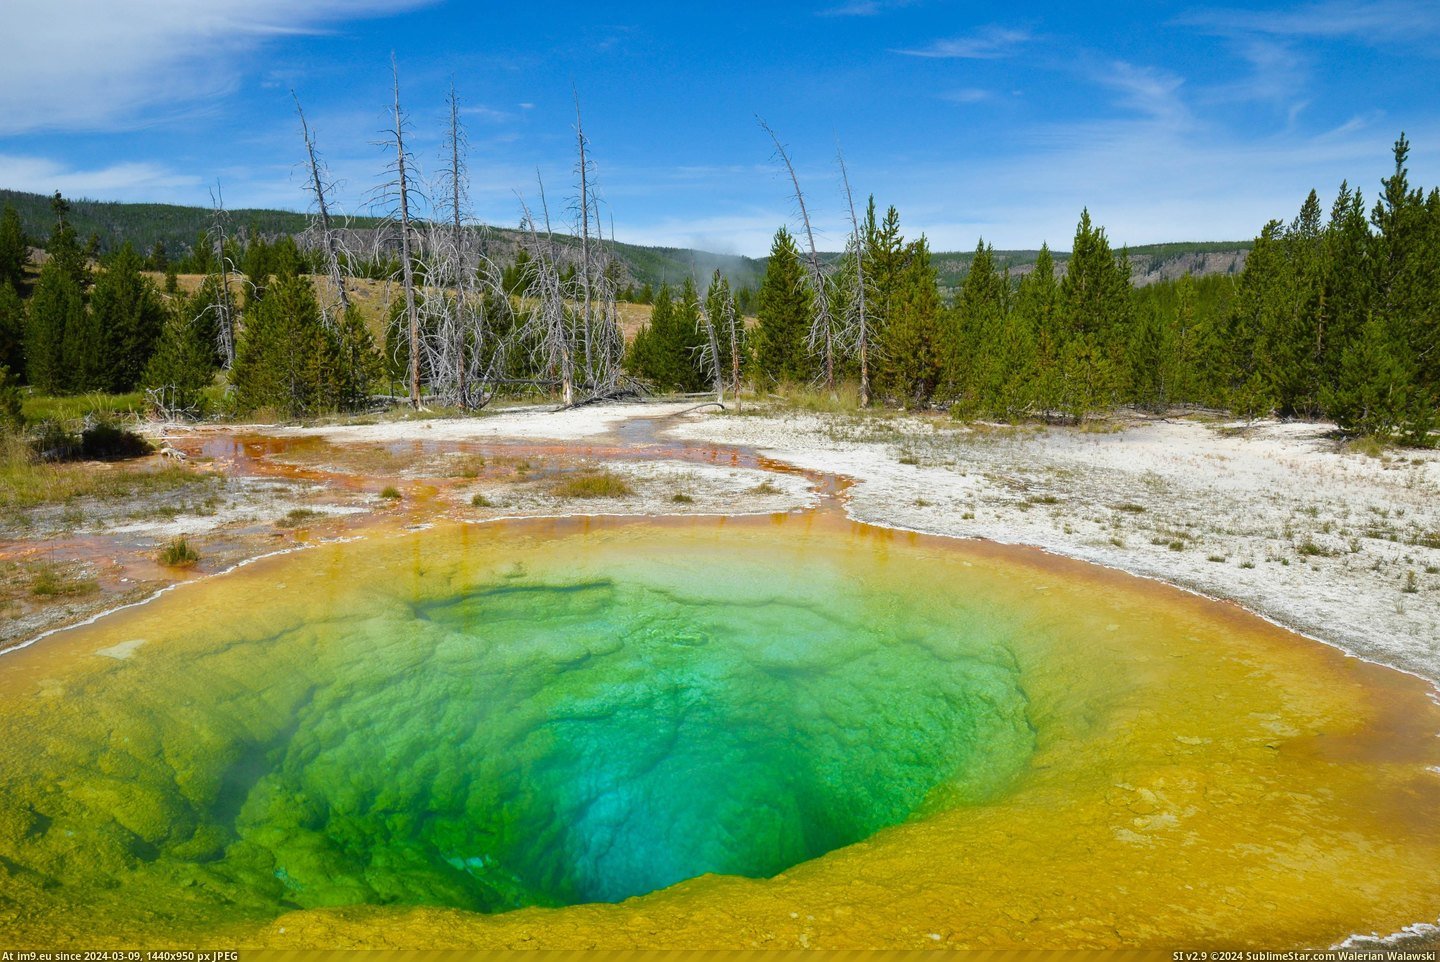 #Beautiful #Morning #Yellowstone #Glory #Pool #Colors [Earthporn]  The beautiful colors of the Morning Glory Pool, Yellowstone [4928×3264] Pic. (Obraz z album My r/EARTHPORN favs))